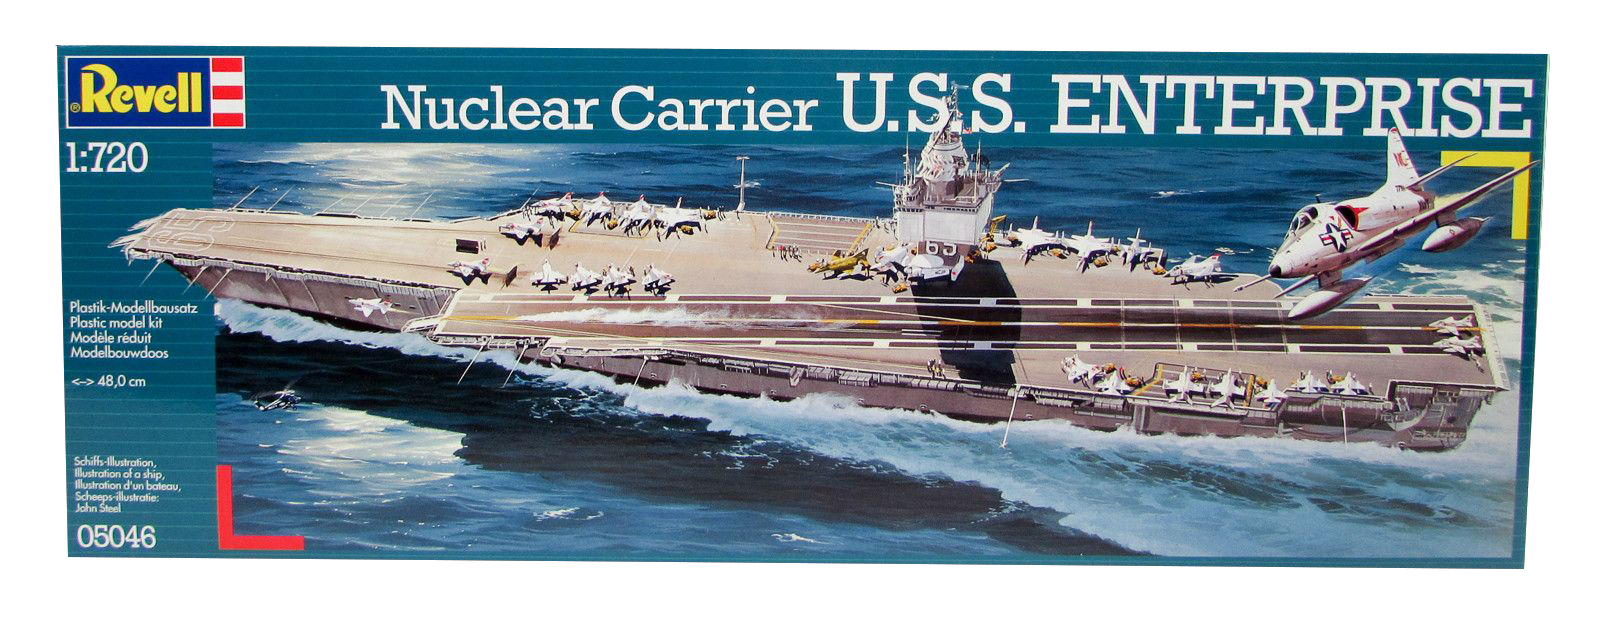 Revell Nuclear Carrier U.S.S. Enterprise in 1:720 bouwpakket